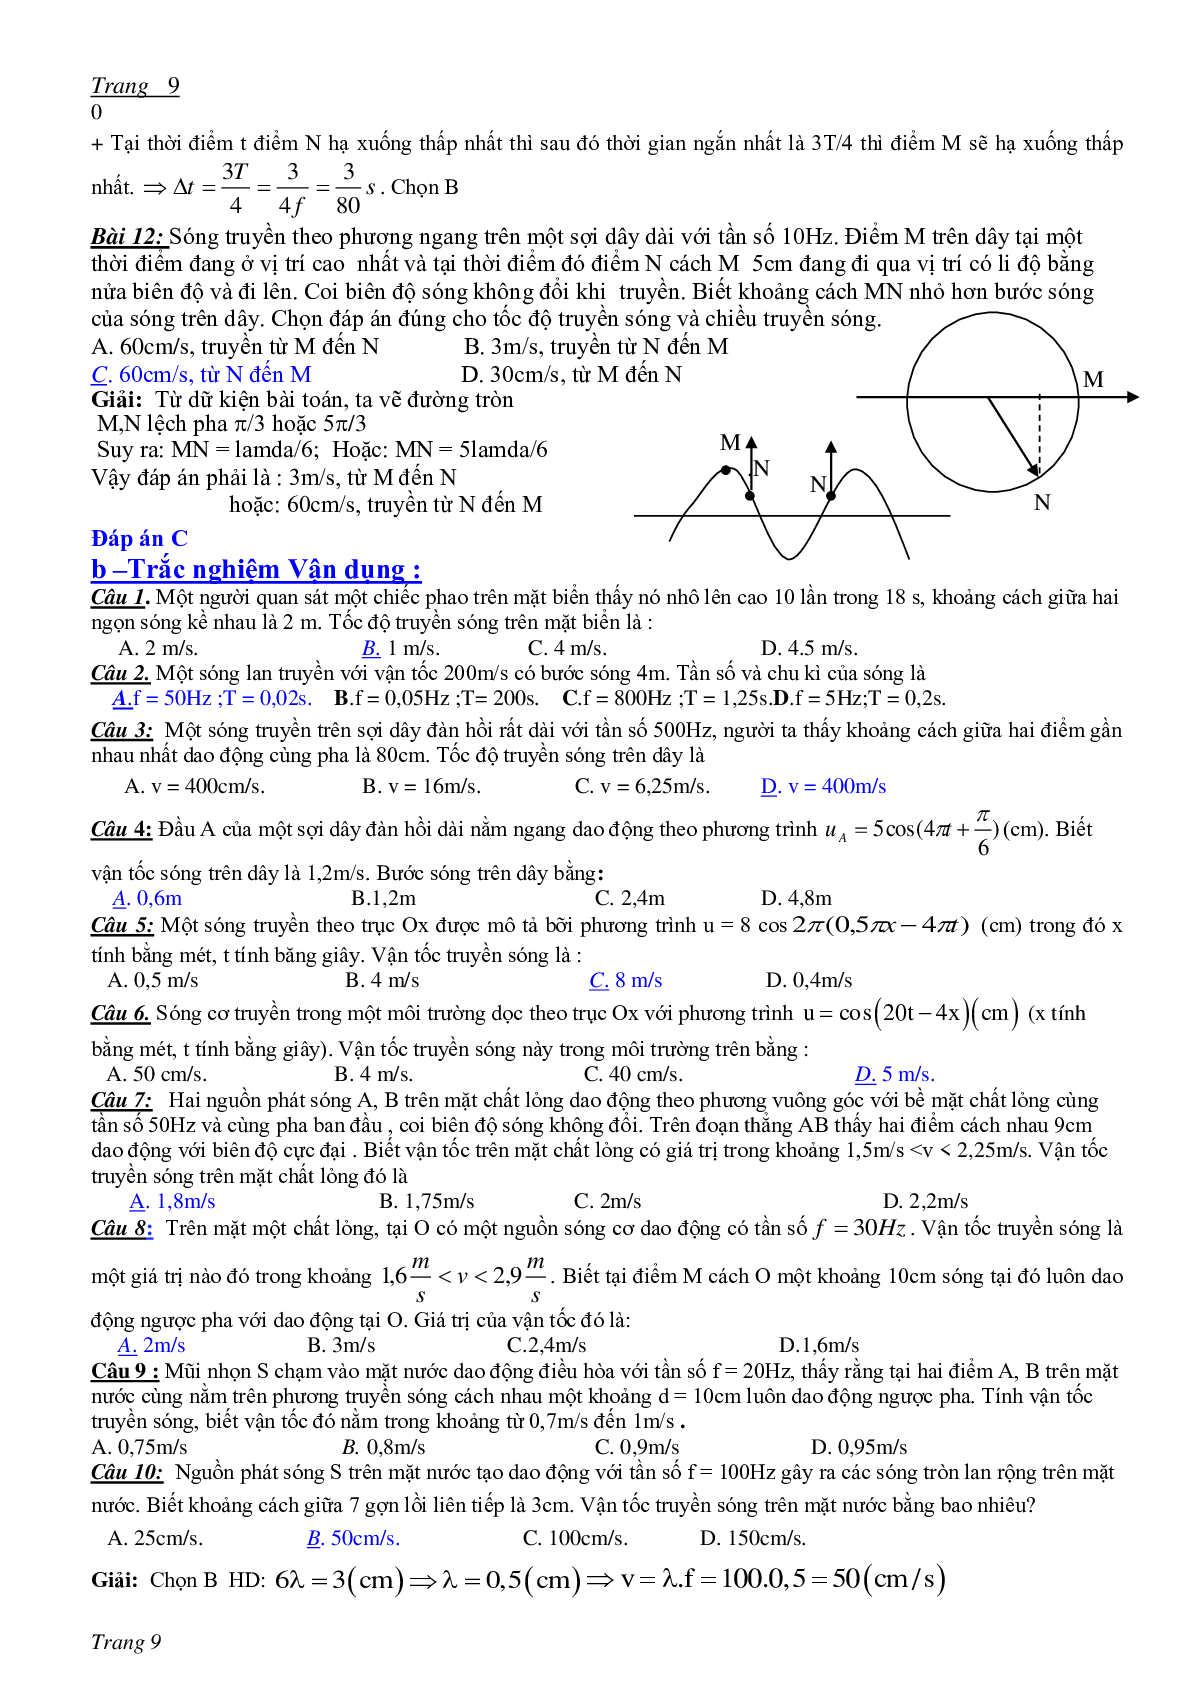 Chuyên đề Sóng cơ môn Vật lý lớp 12 (trang 9)